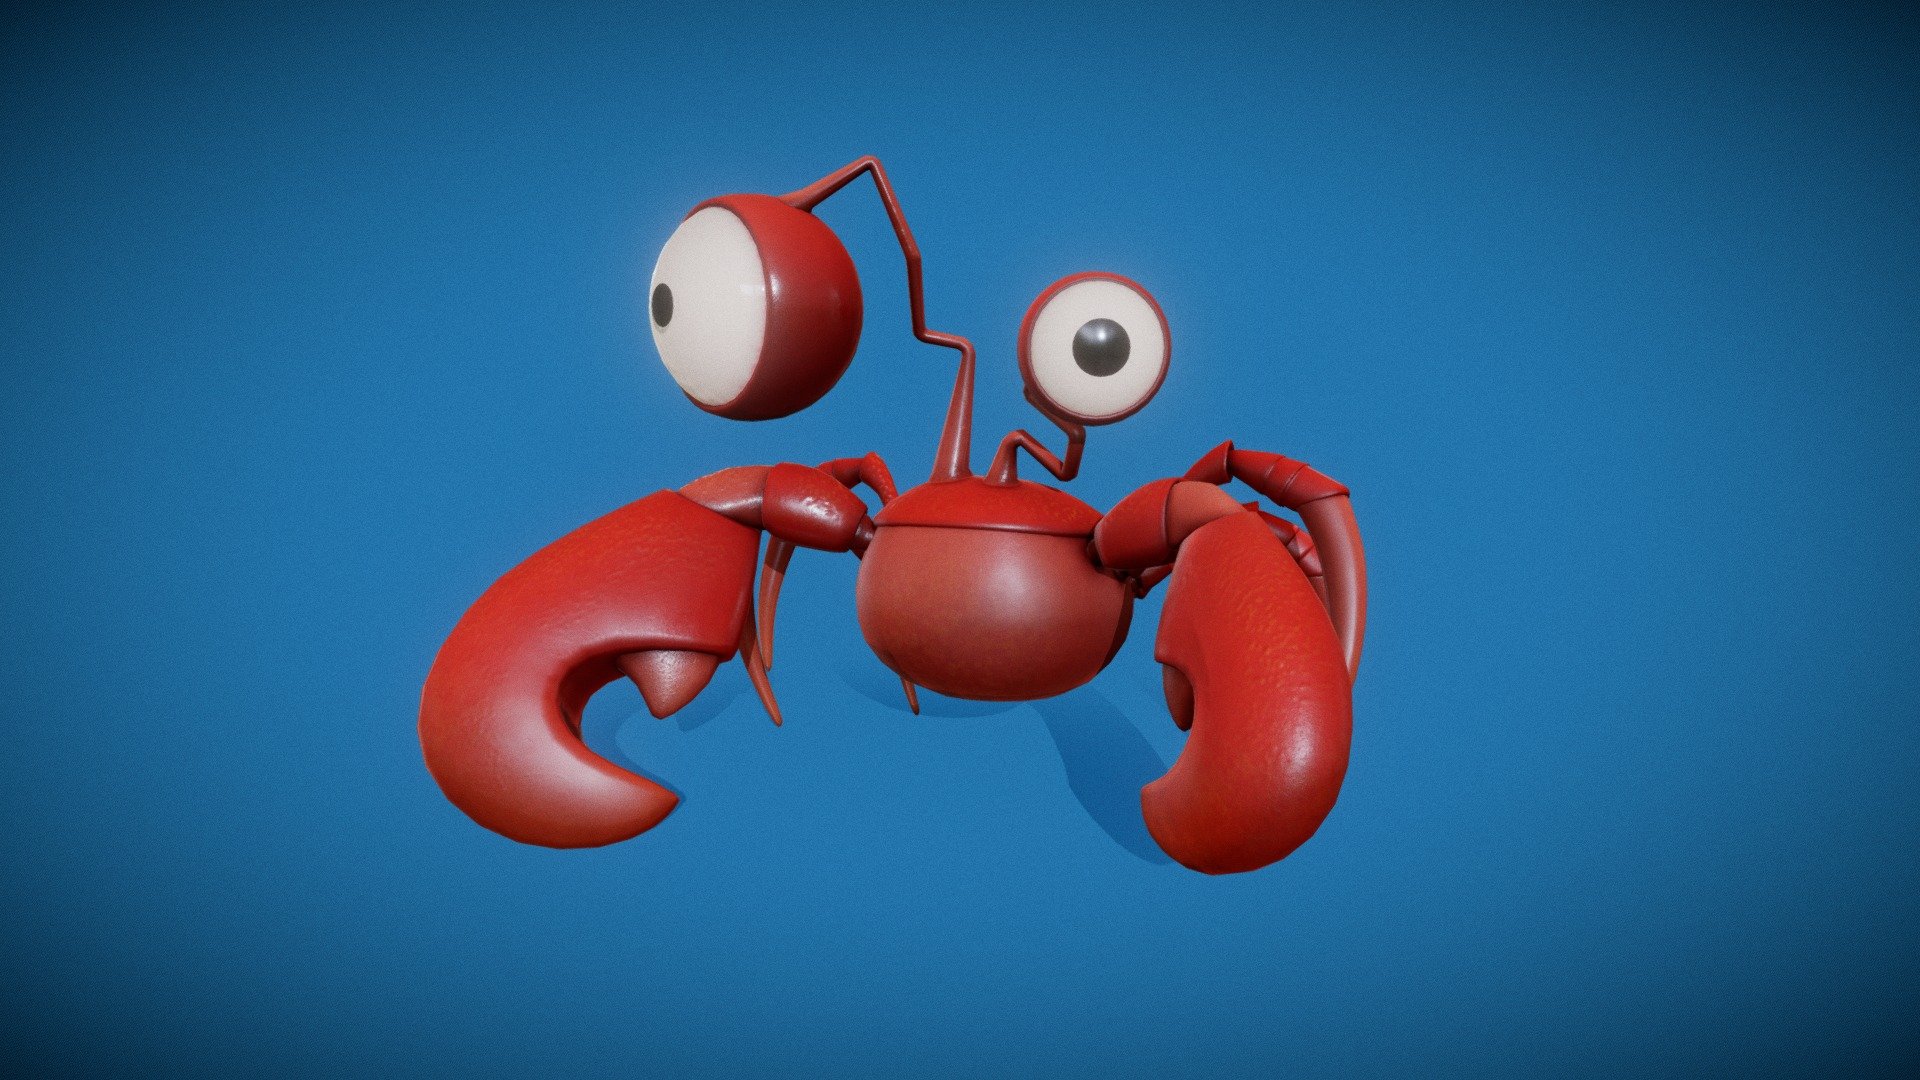 crab crab crab =) - Crab - 3D model by ckatuh 3d model